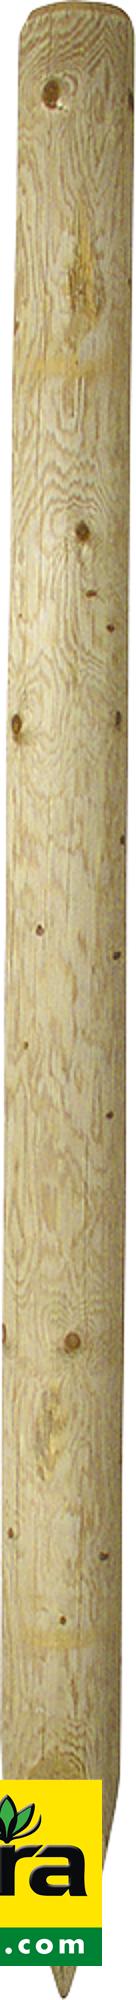 Holzpfosten, 1,75 m, imprägniert, gespitzt, d= 10 cm